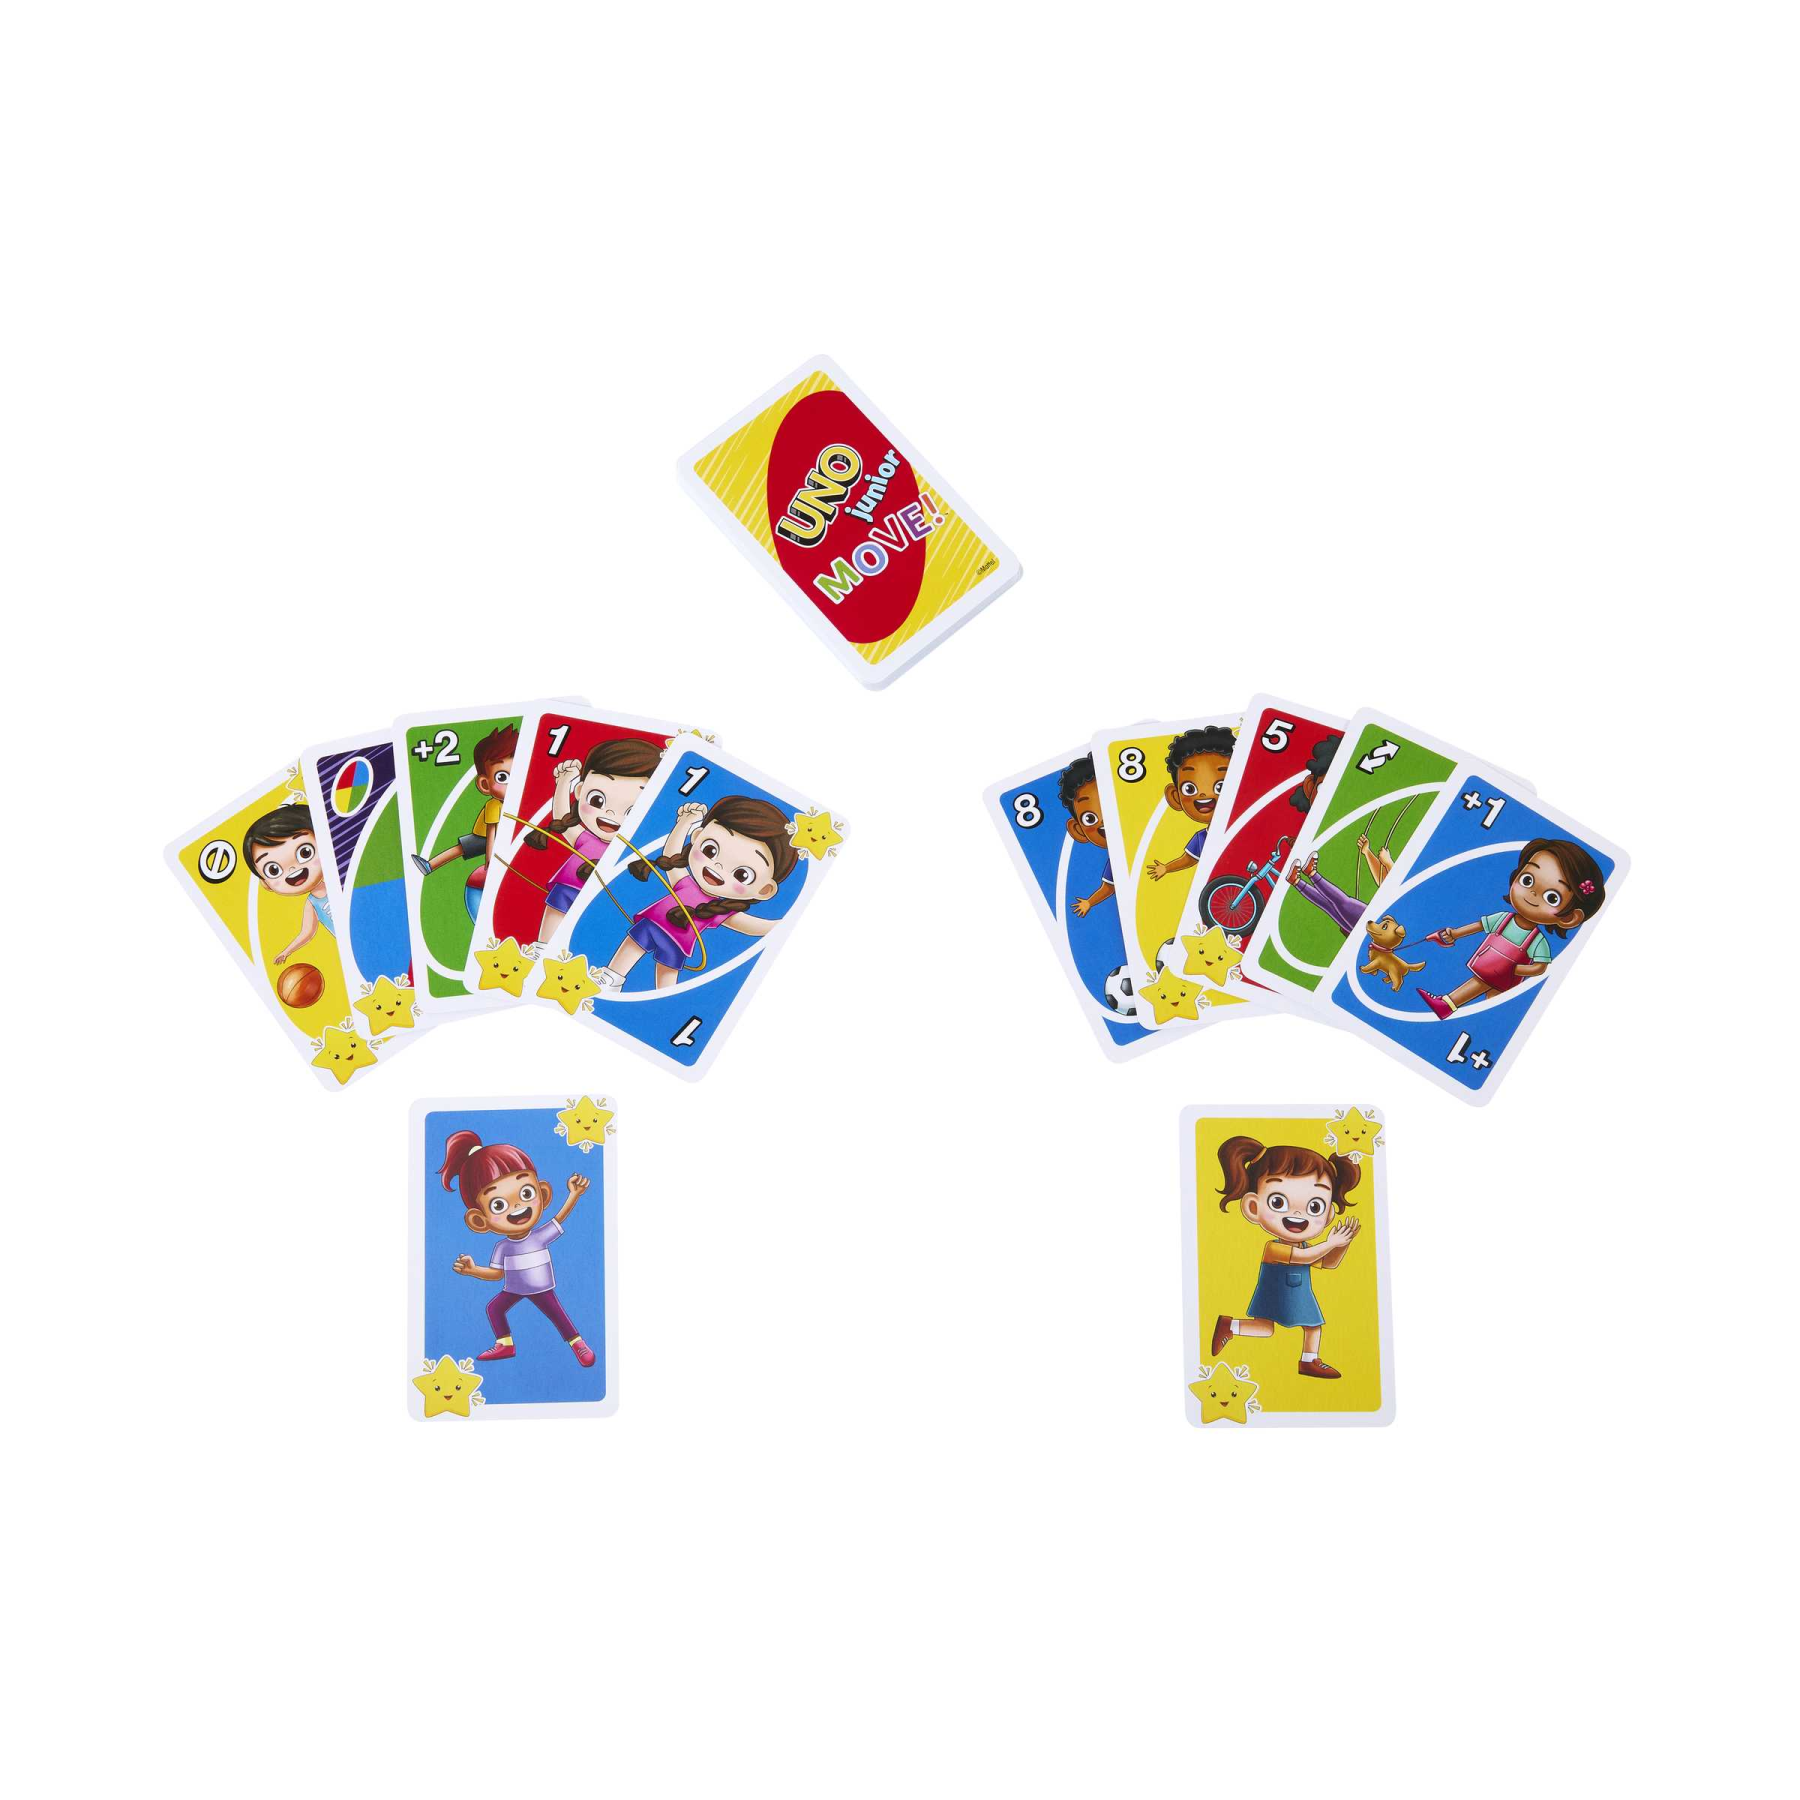 Mattel games - uno junior move!, gioco di carte per bambini per serate di gioco in famiglia, viaggi, campeggi e feste, giocattolo per bambini 3+ anni, hnn03 - MATTEL GAMES, UNO